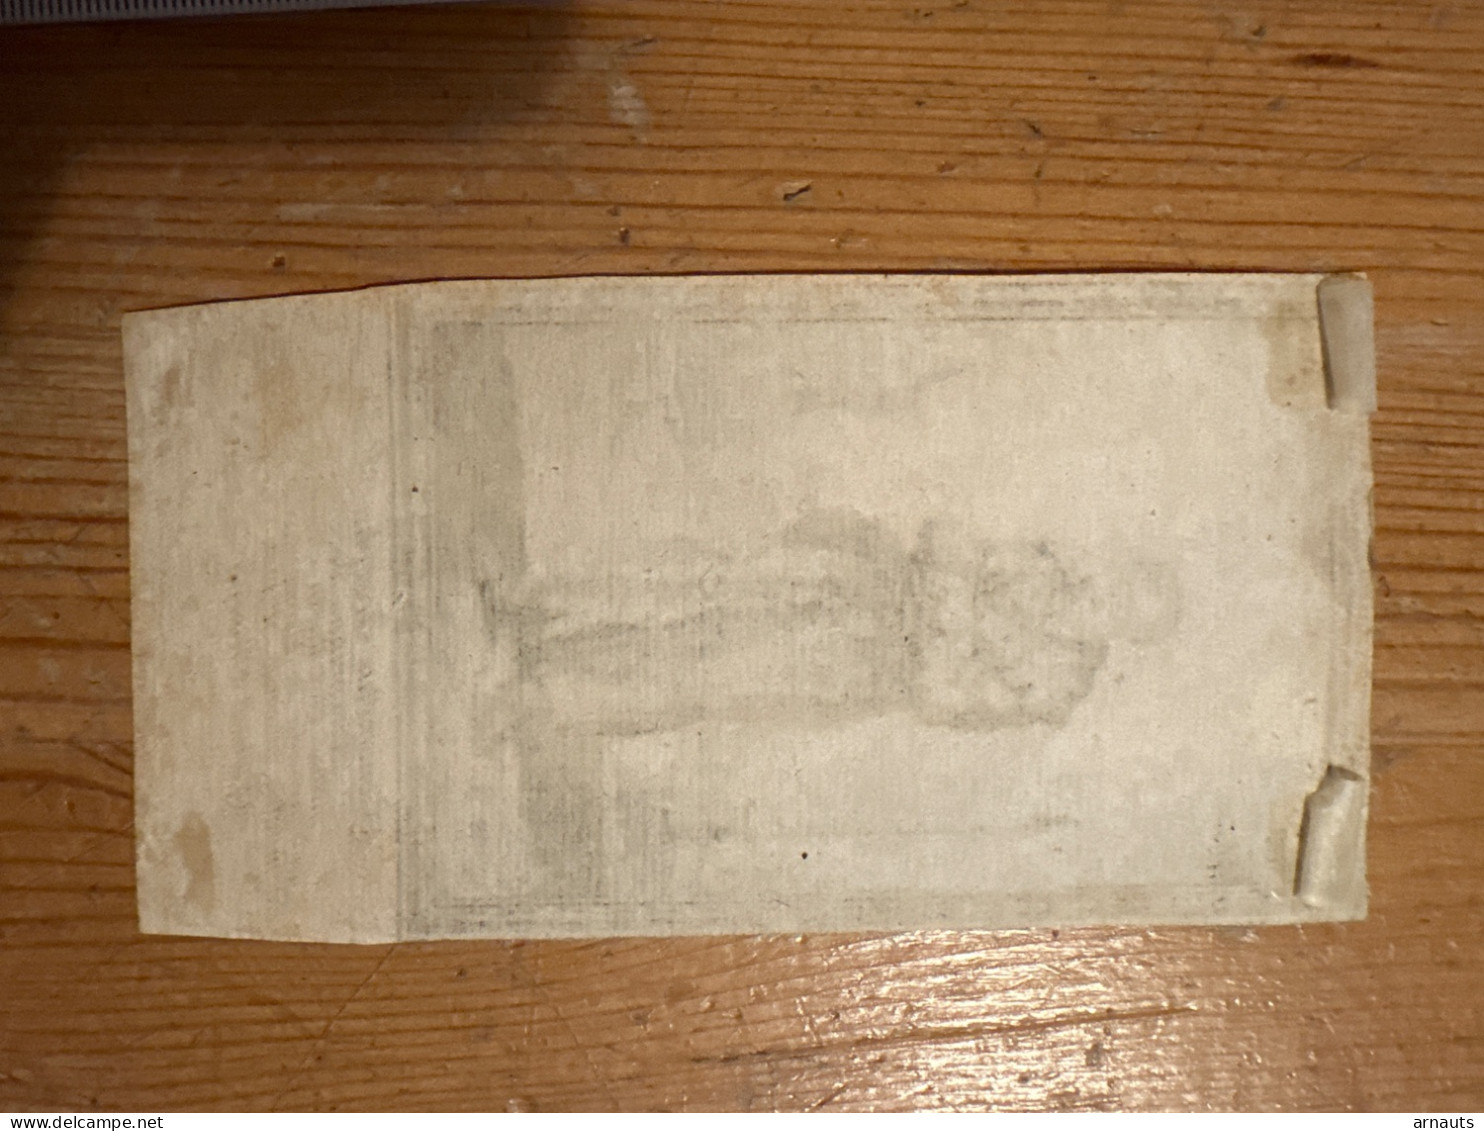 Kopergravure Papier 7 X 13,5 Cm Benedictus Josephus Labre Peregrinus Vocatus *1748 Boulogne France Pelerin +1783 Rome - Collezioni